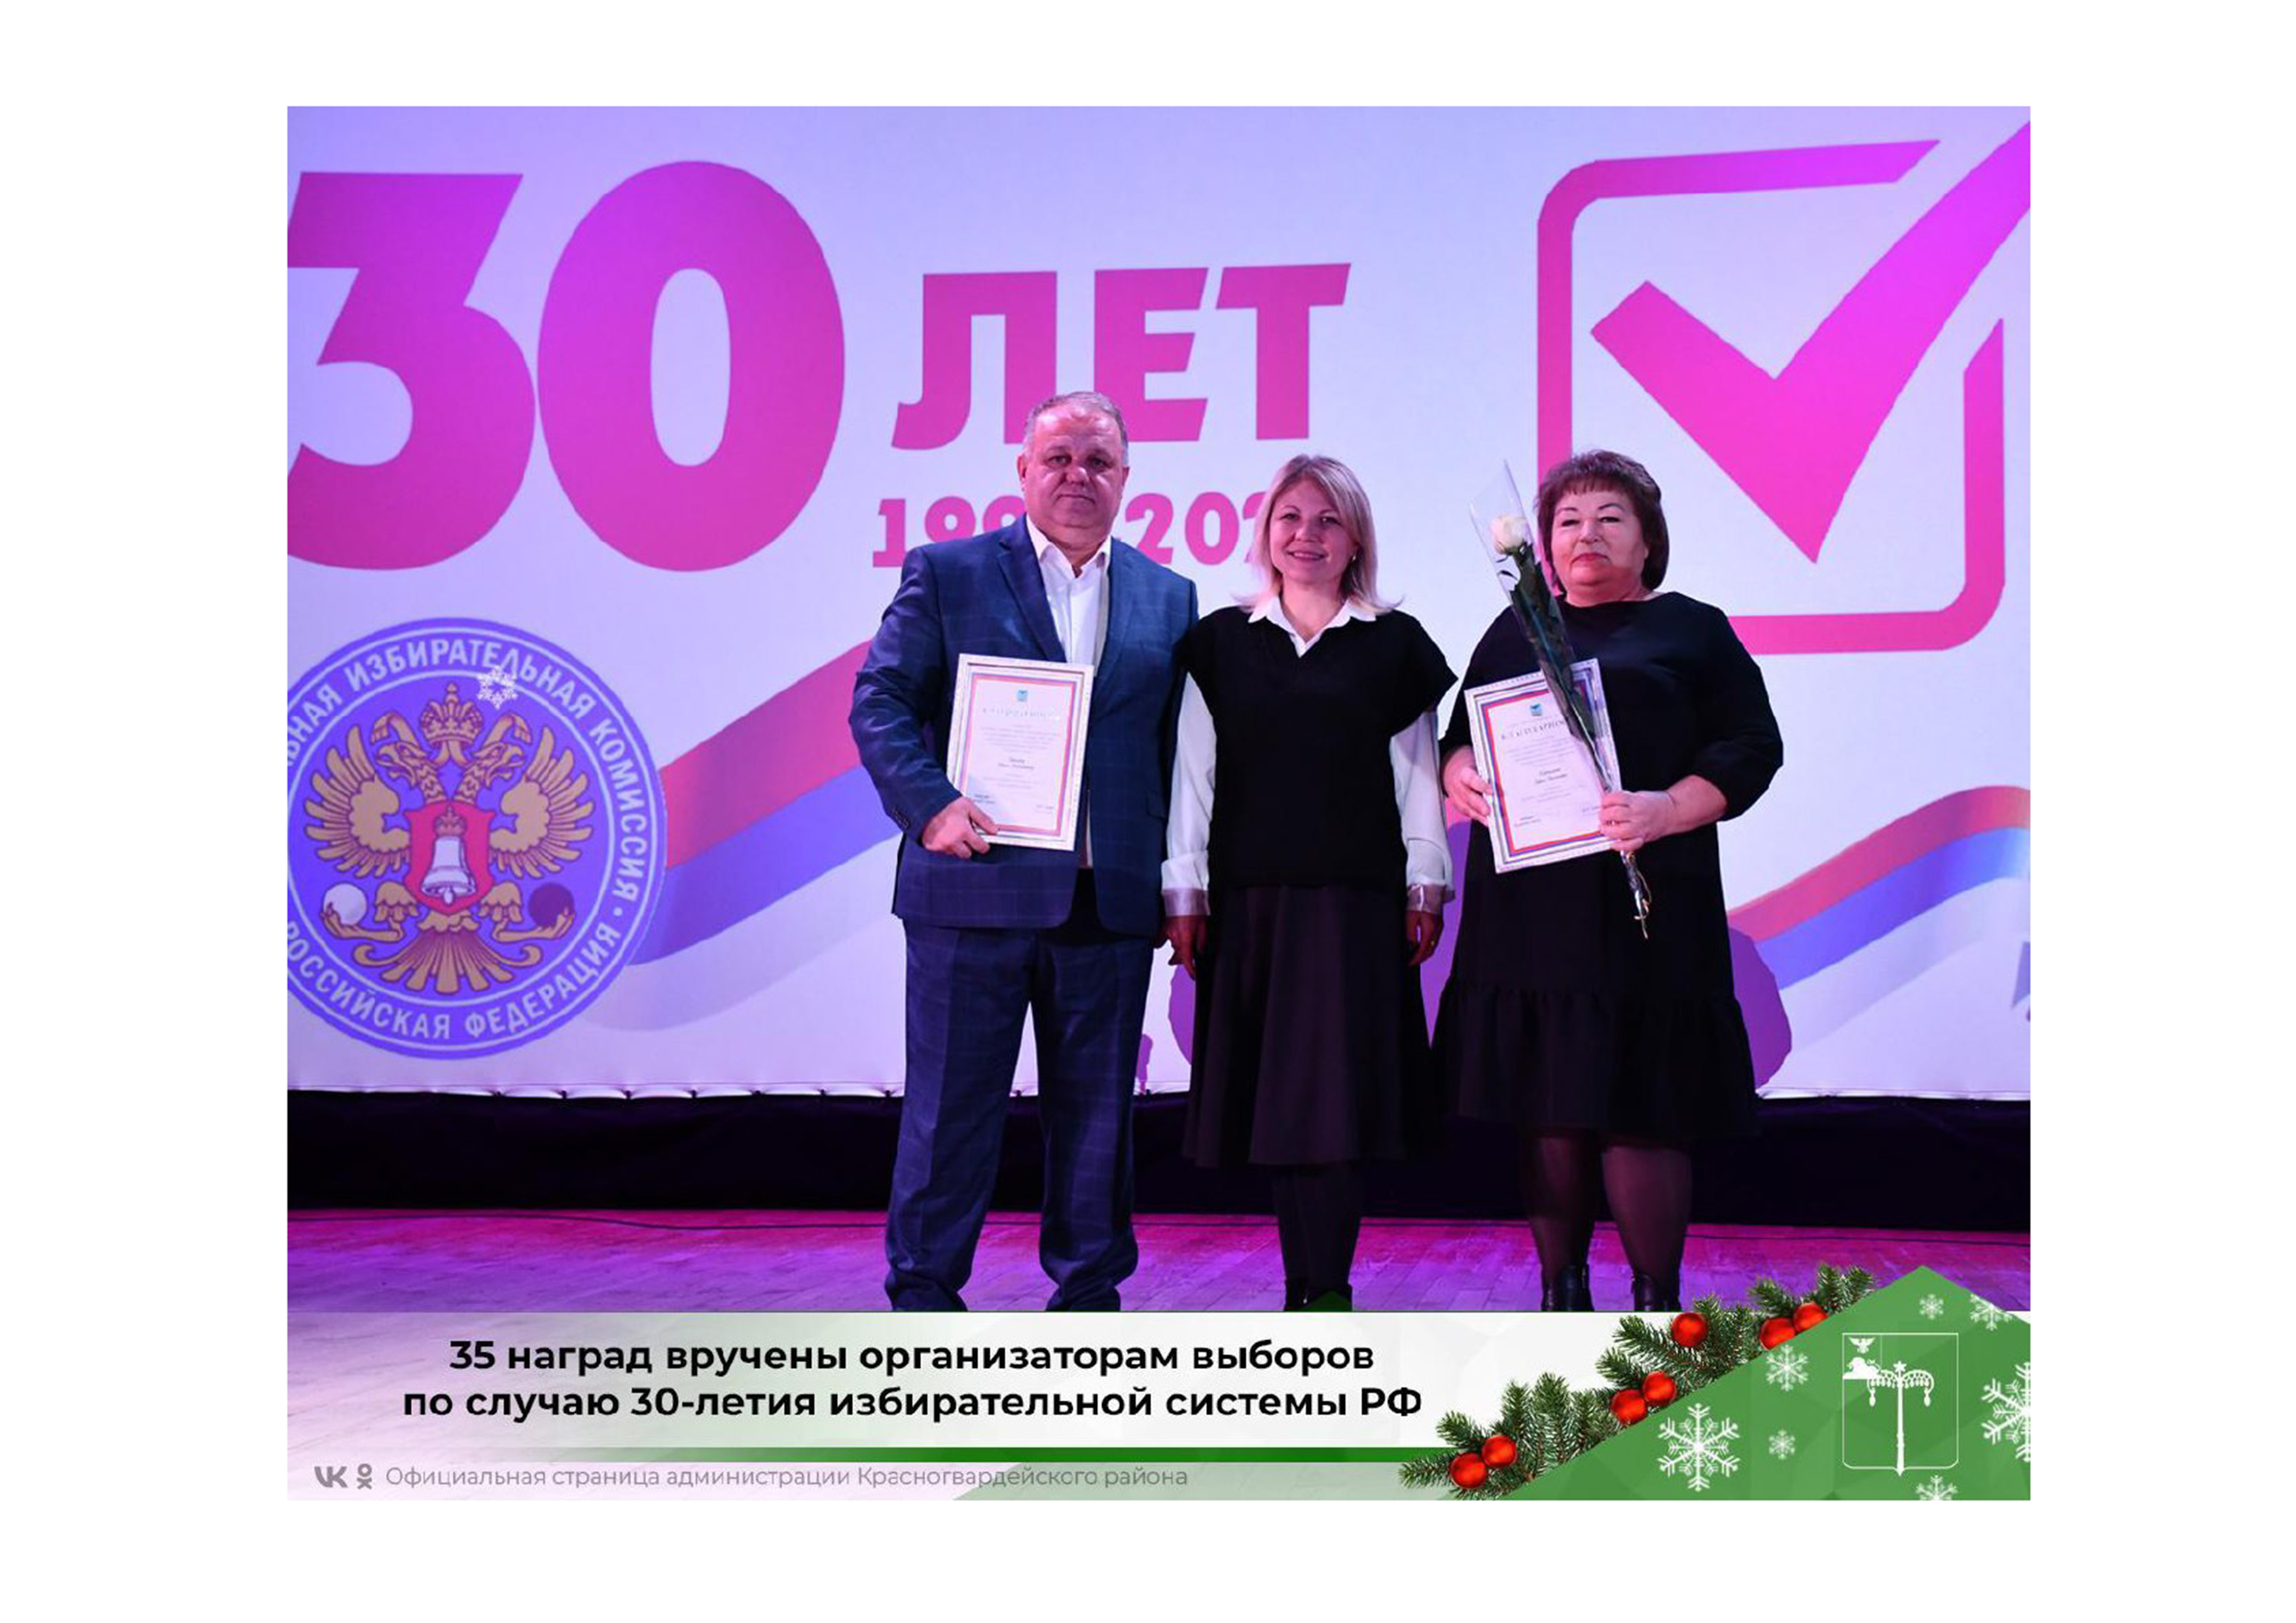 35 наград вручены организаторам выборов по случаю 30-летия избирательной системы РФ.